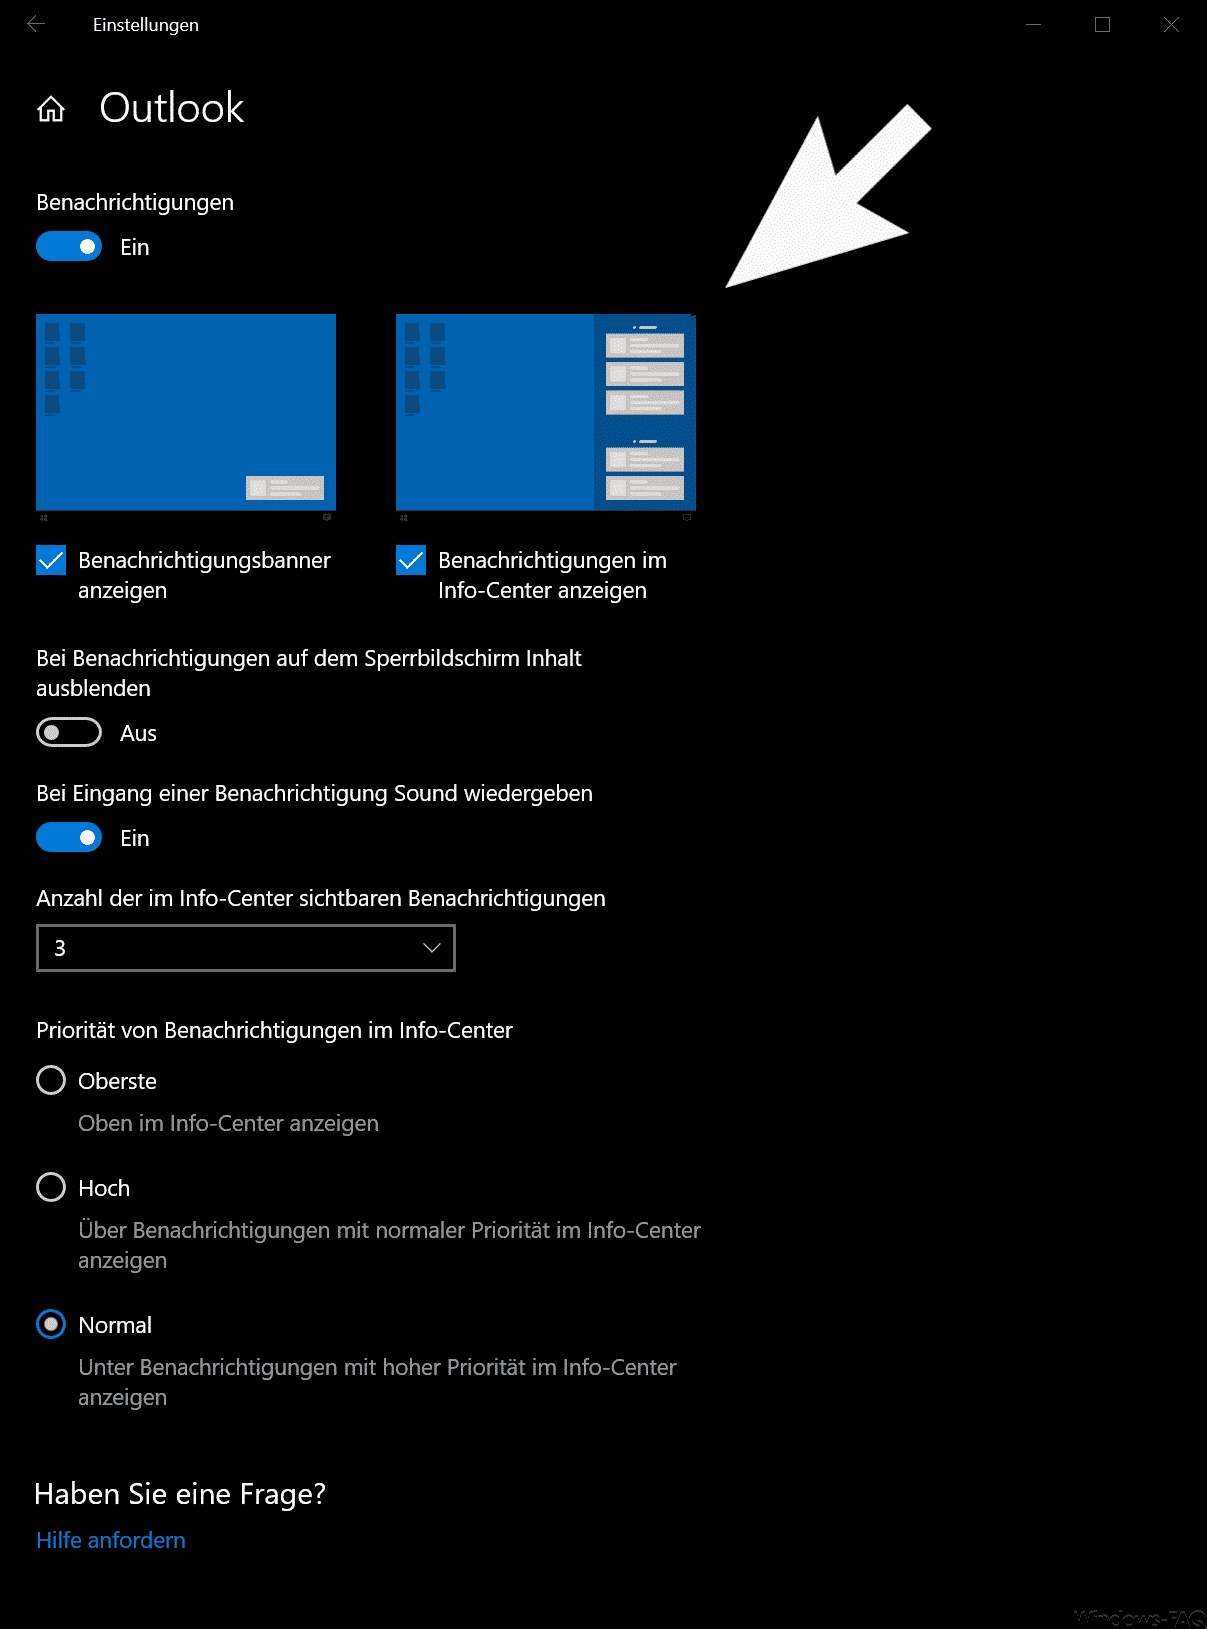 Neue Benachrichtigungs-Einstellungen in Windows 10 Version 1909